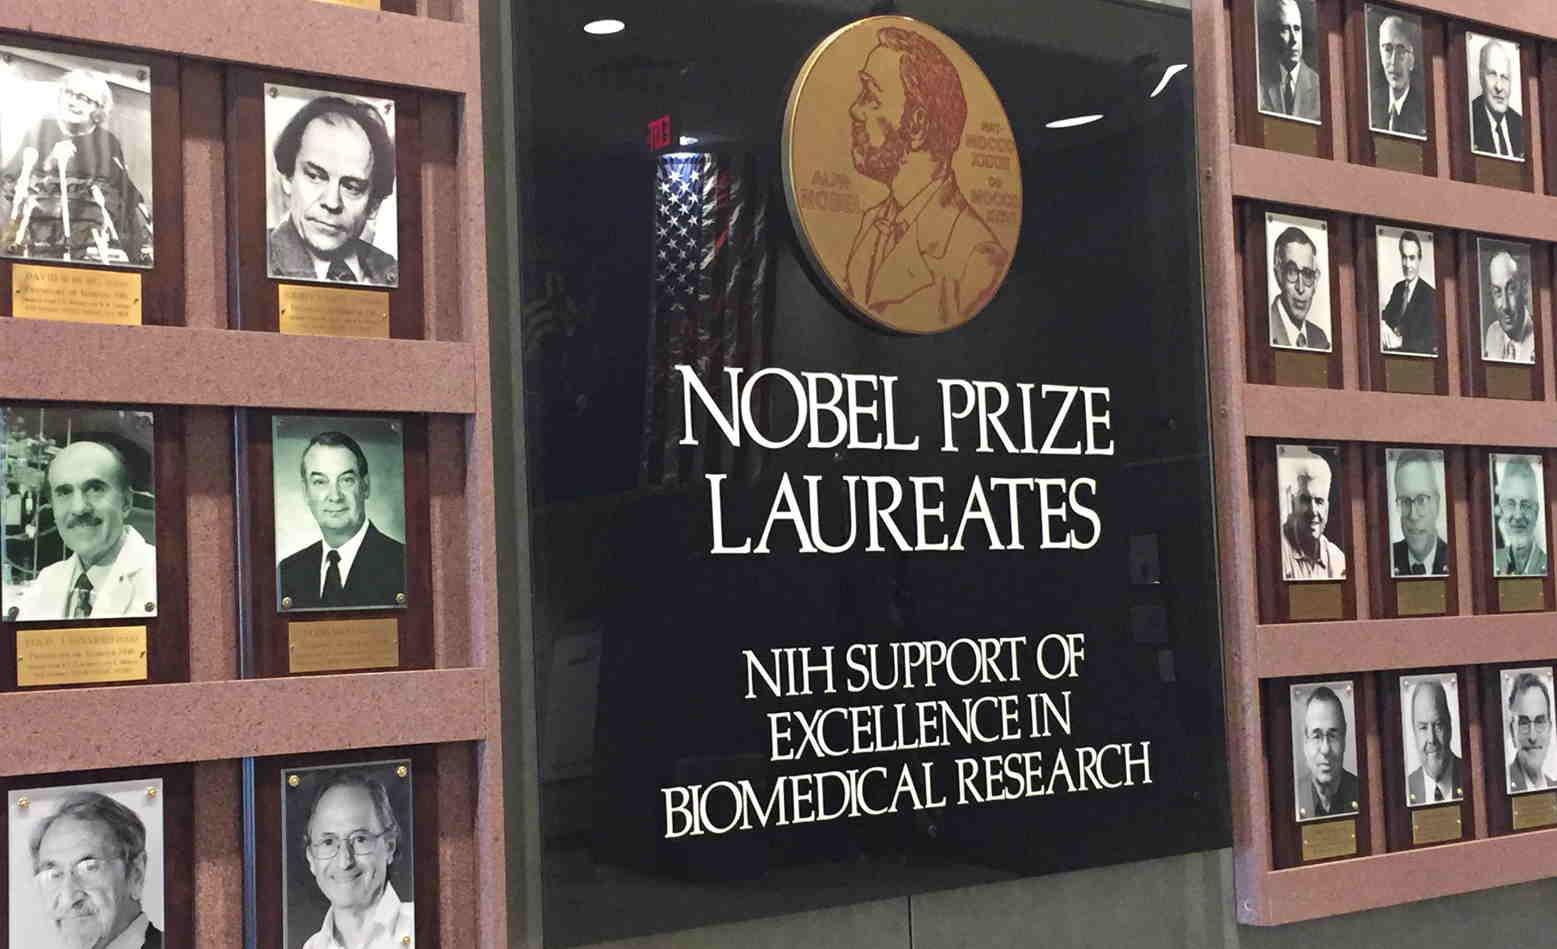 NIH Laureates, all men